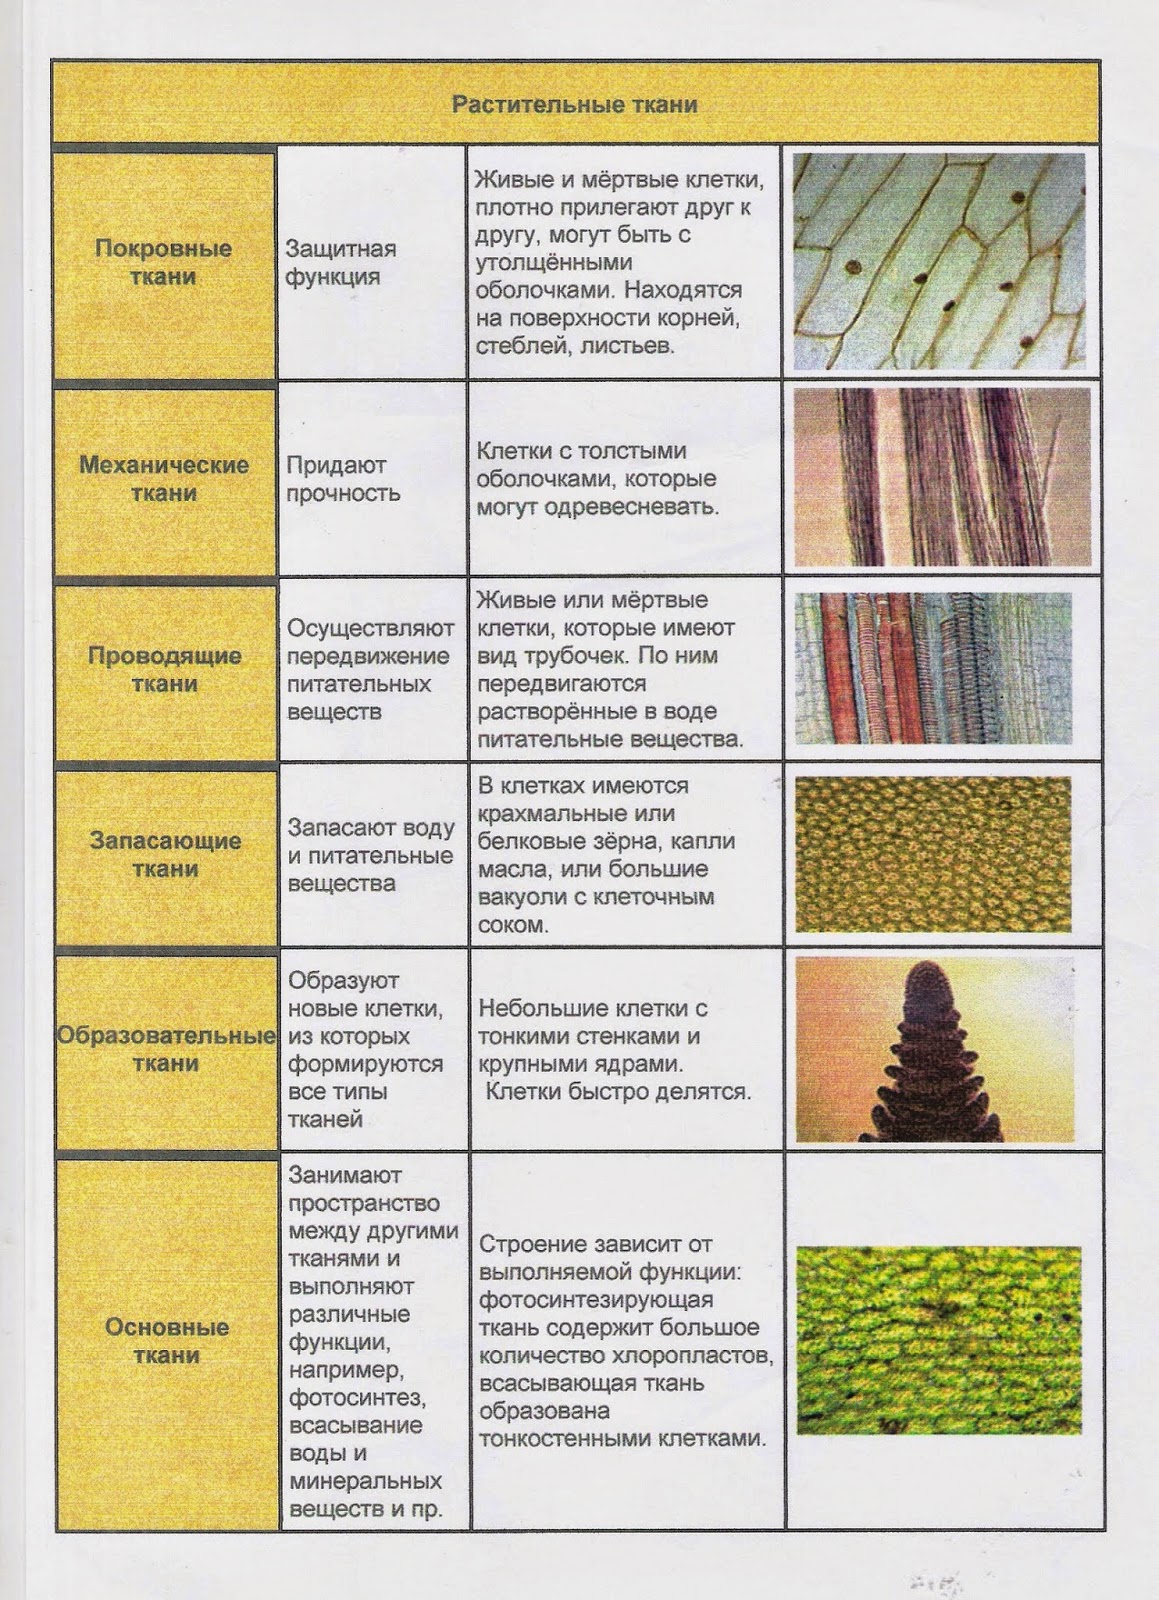 У каких растений 5 тканей. Таблица растительные ткани 6 класс биология. Типы тканей растений 6 класс биология таблица. Виды тканей растений таблица биология 6 класс. Виды тканей растений 5 класс биология таблица.